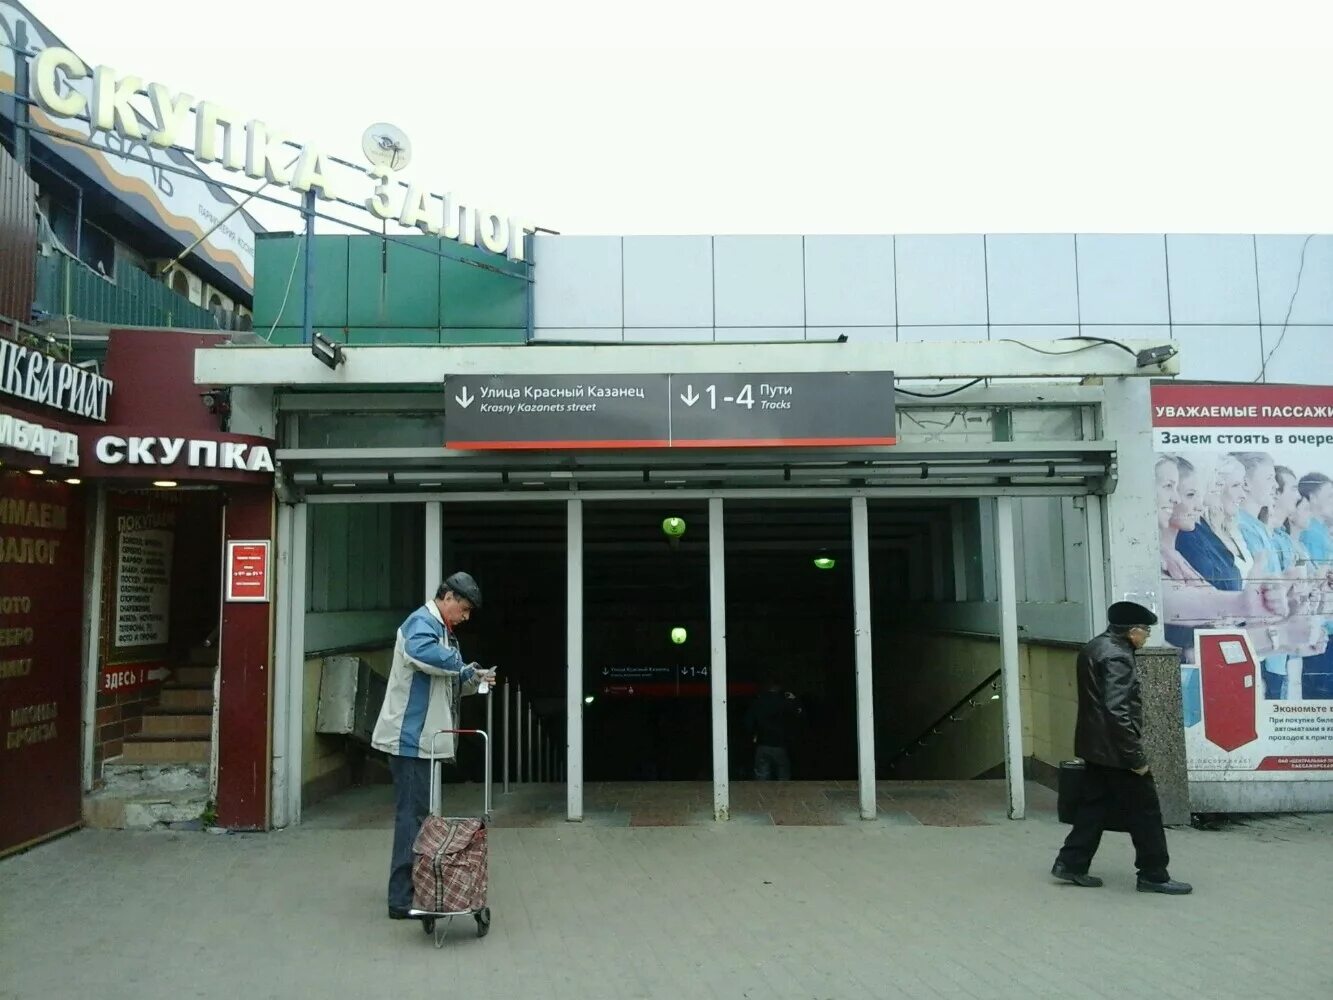 Выхино платформа 3 путь 3. Железнодорожная станция Выхино. Железнодорожная станция Выхино, Москва. Железнодорожная платформа Выхино. Станции д3